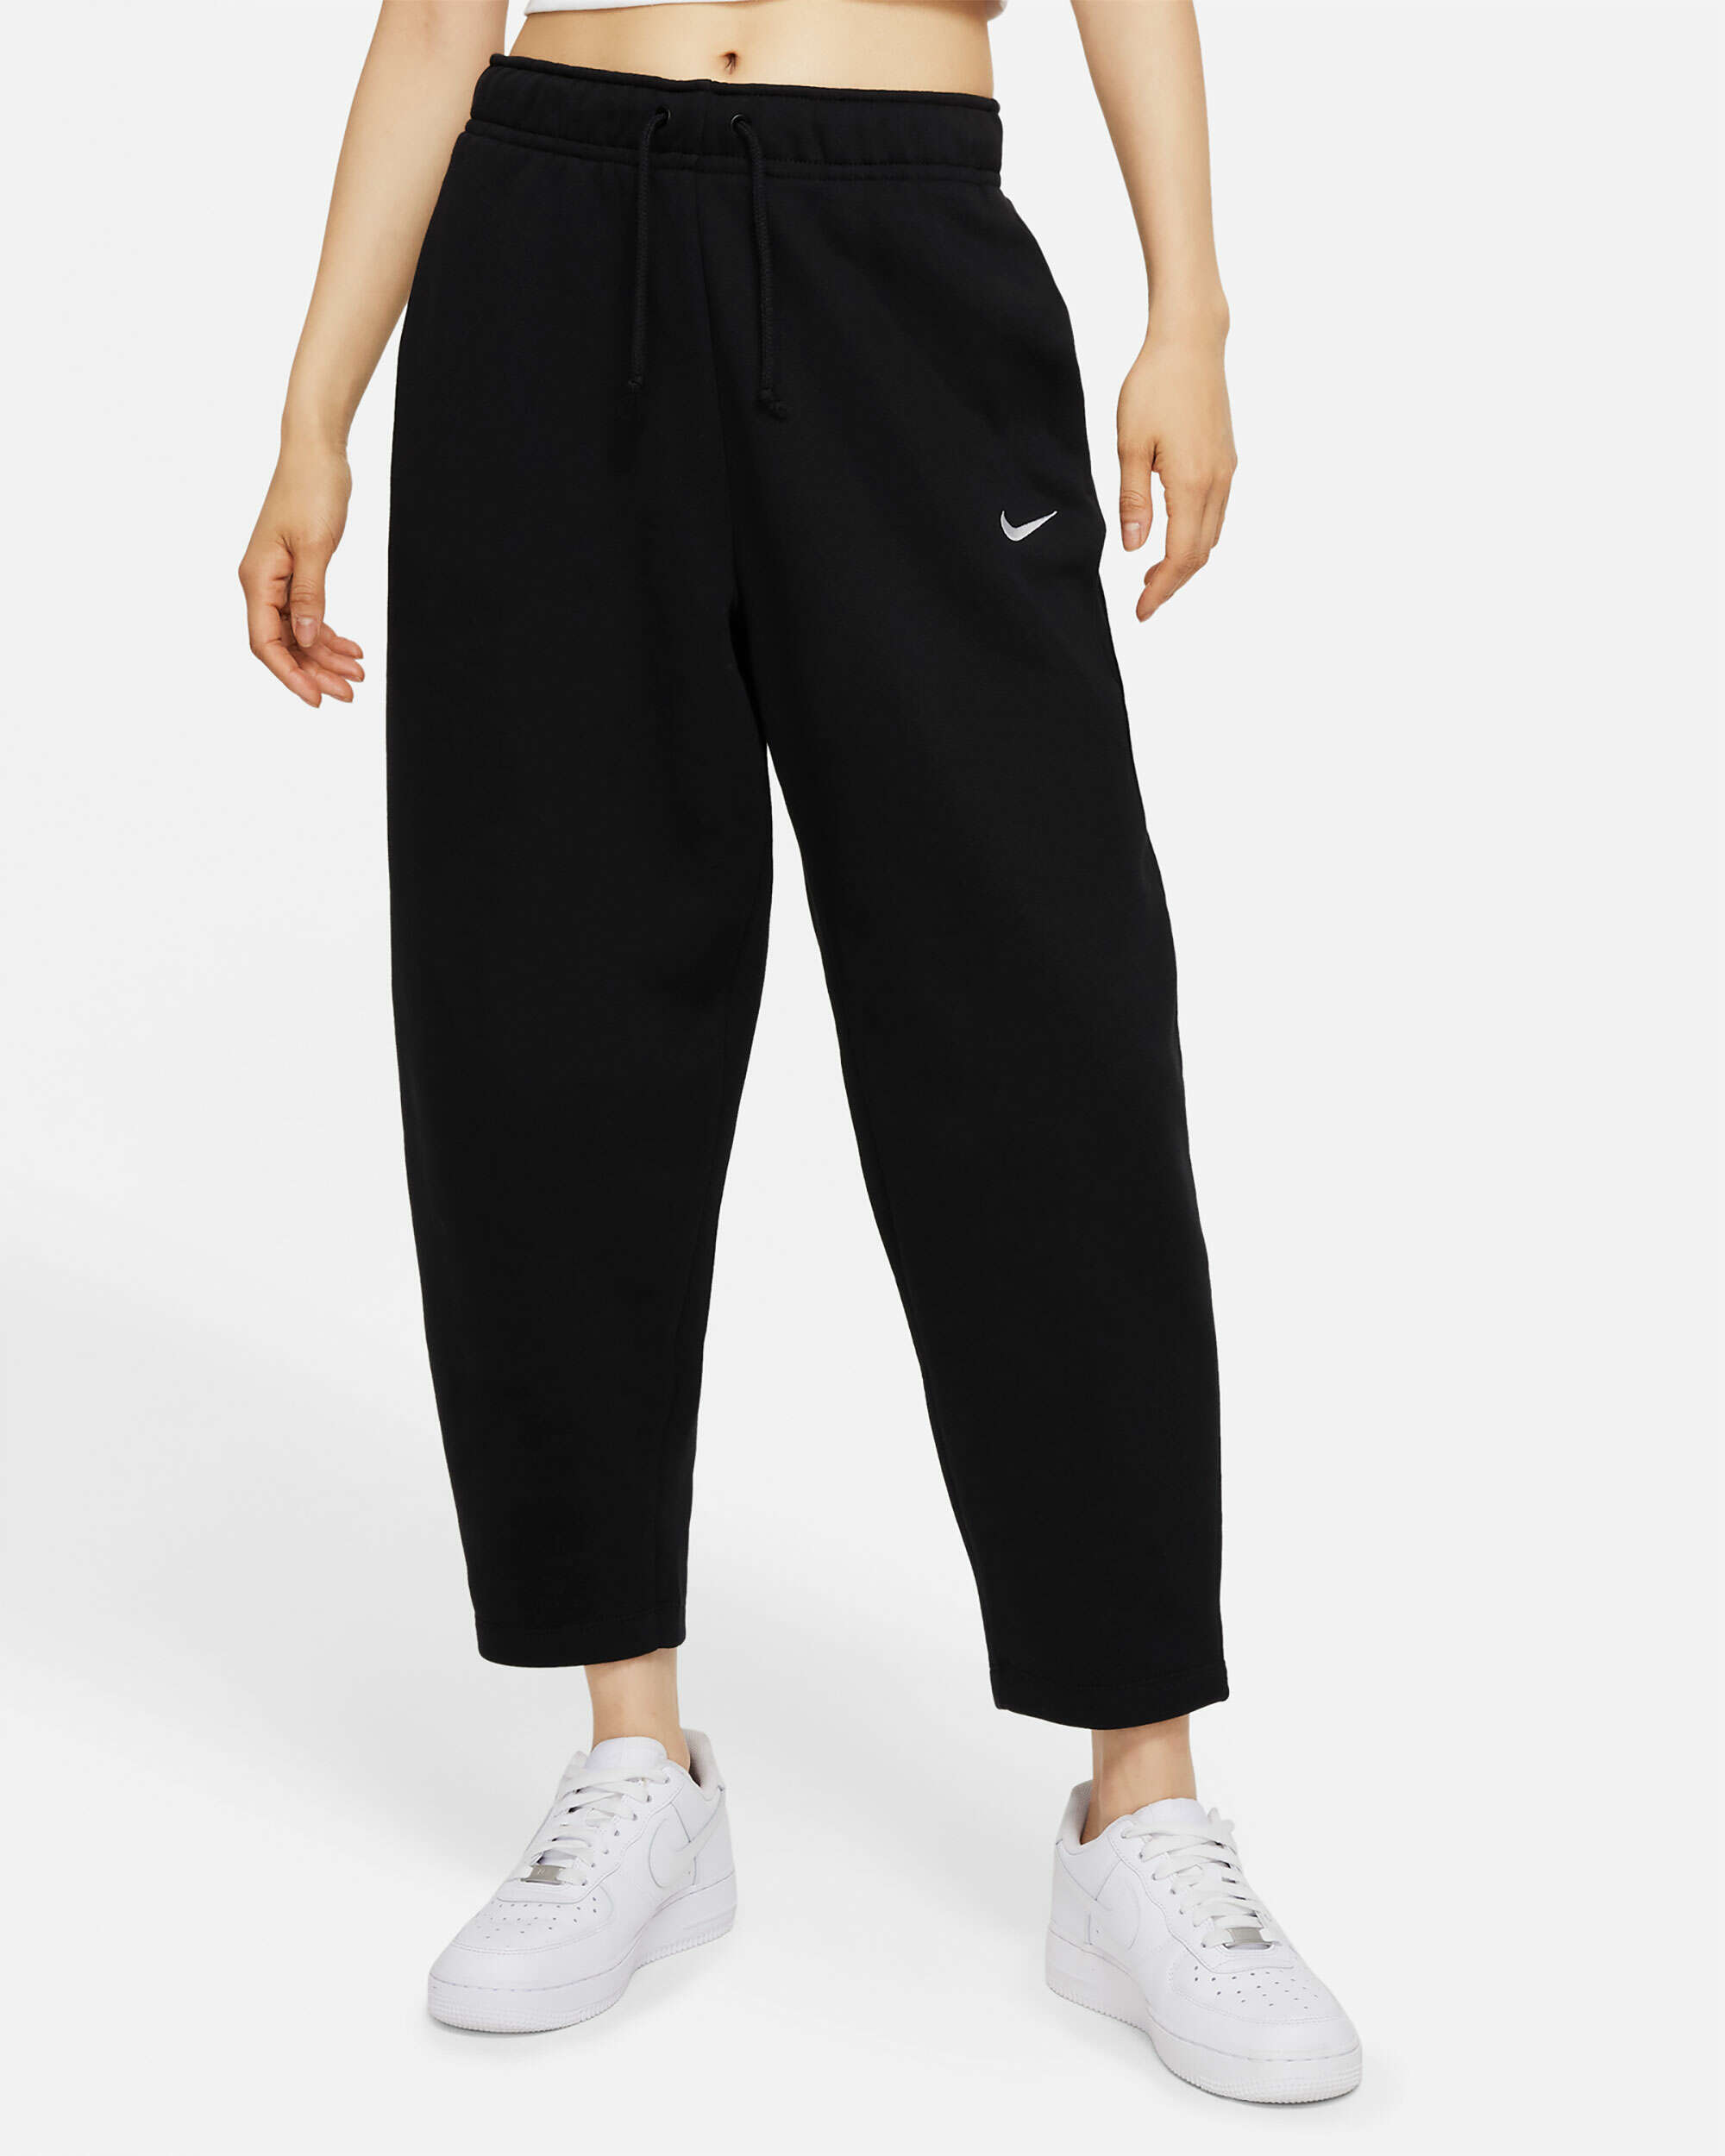 Nike Sportswear Essentials Women's Fleece Pants Negro DD5636-010| Comprar Online en FOOTDISTRICT